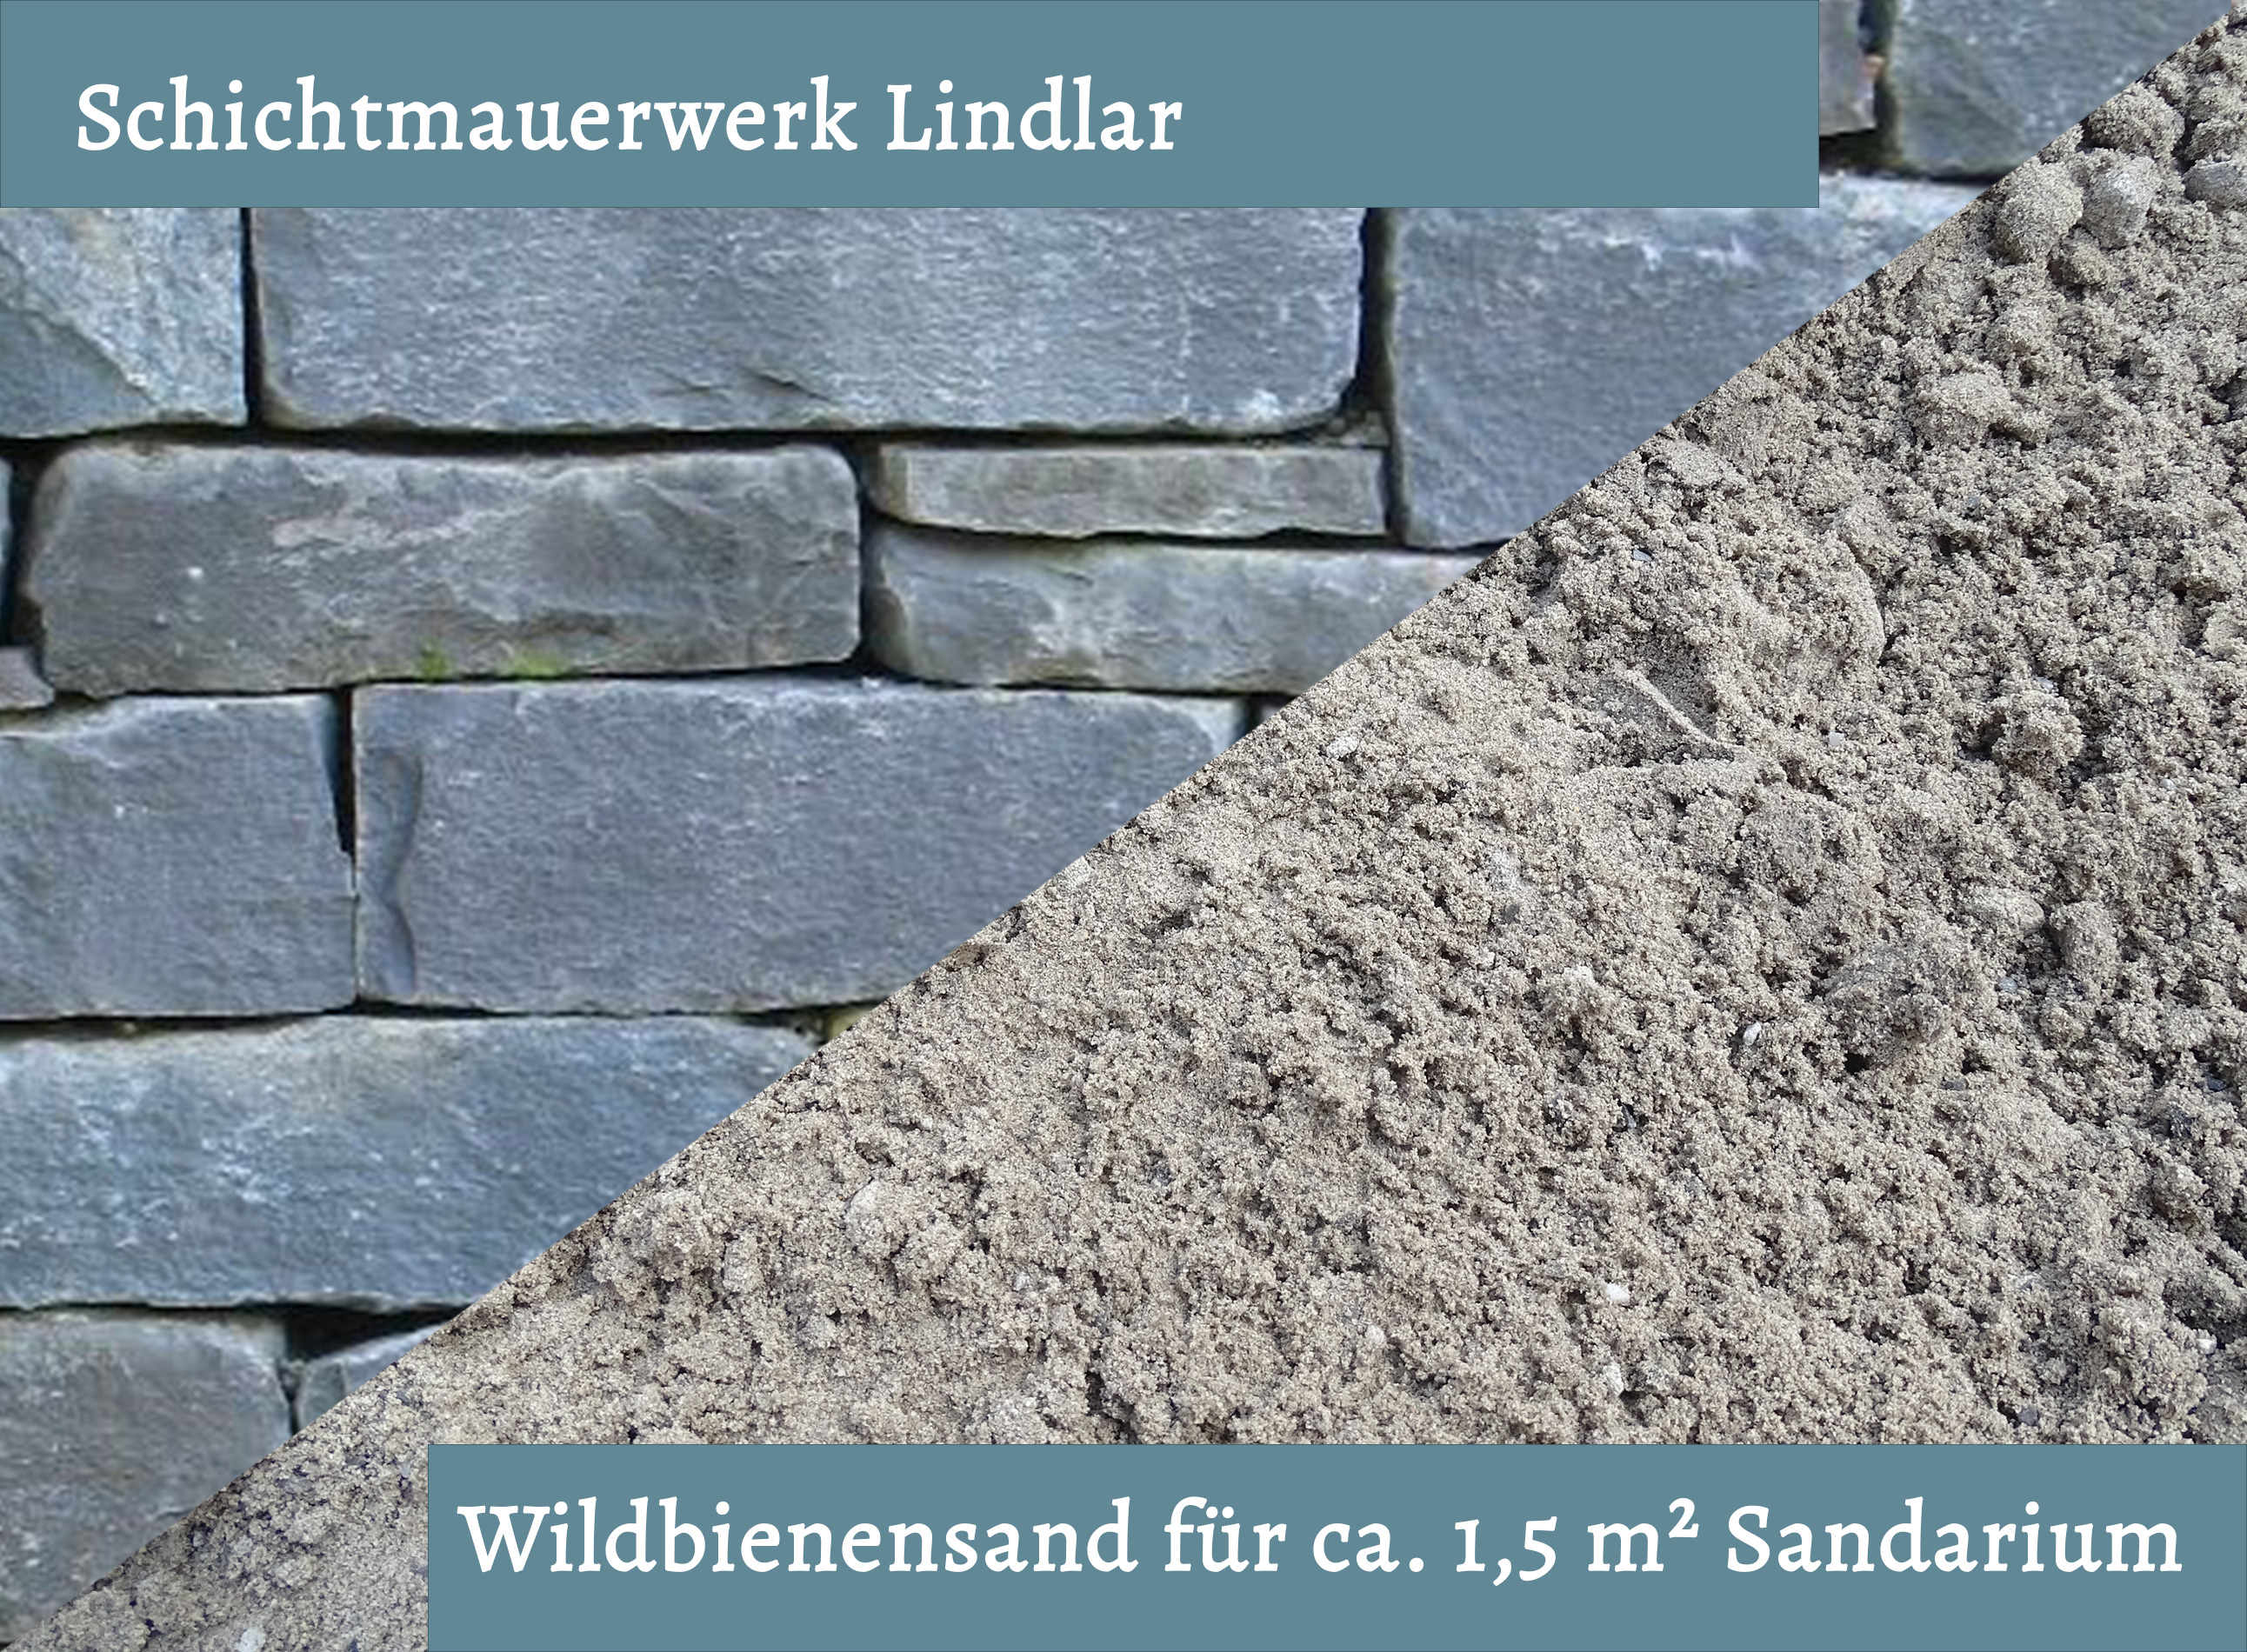 Wildbienensand mit Schichtmauer Lindlar für Sandarium 1,5 m²